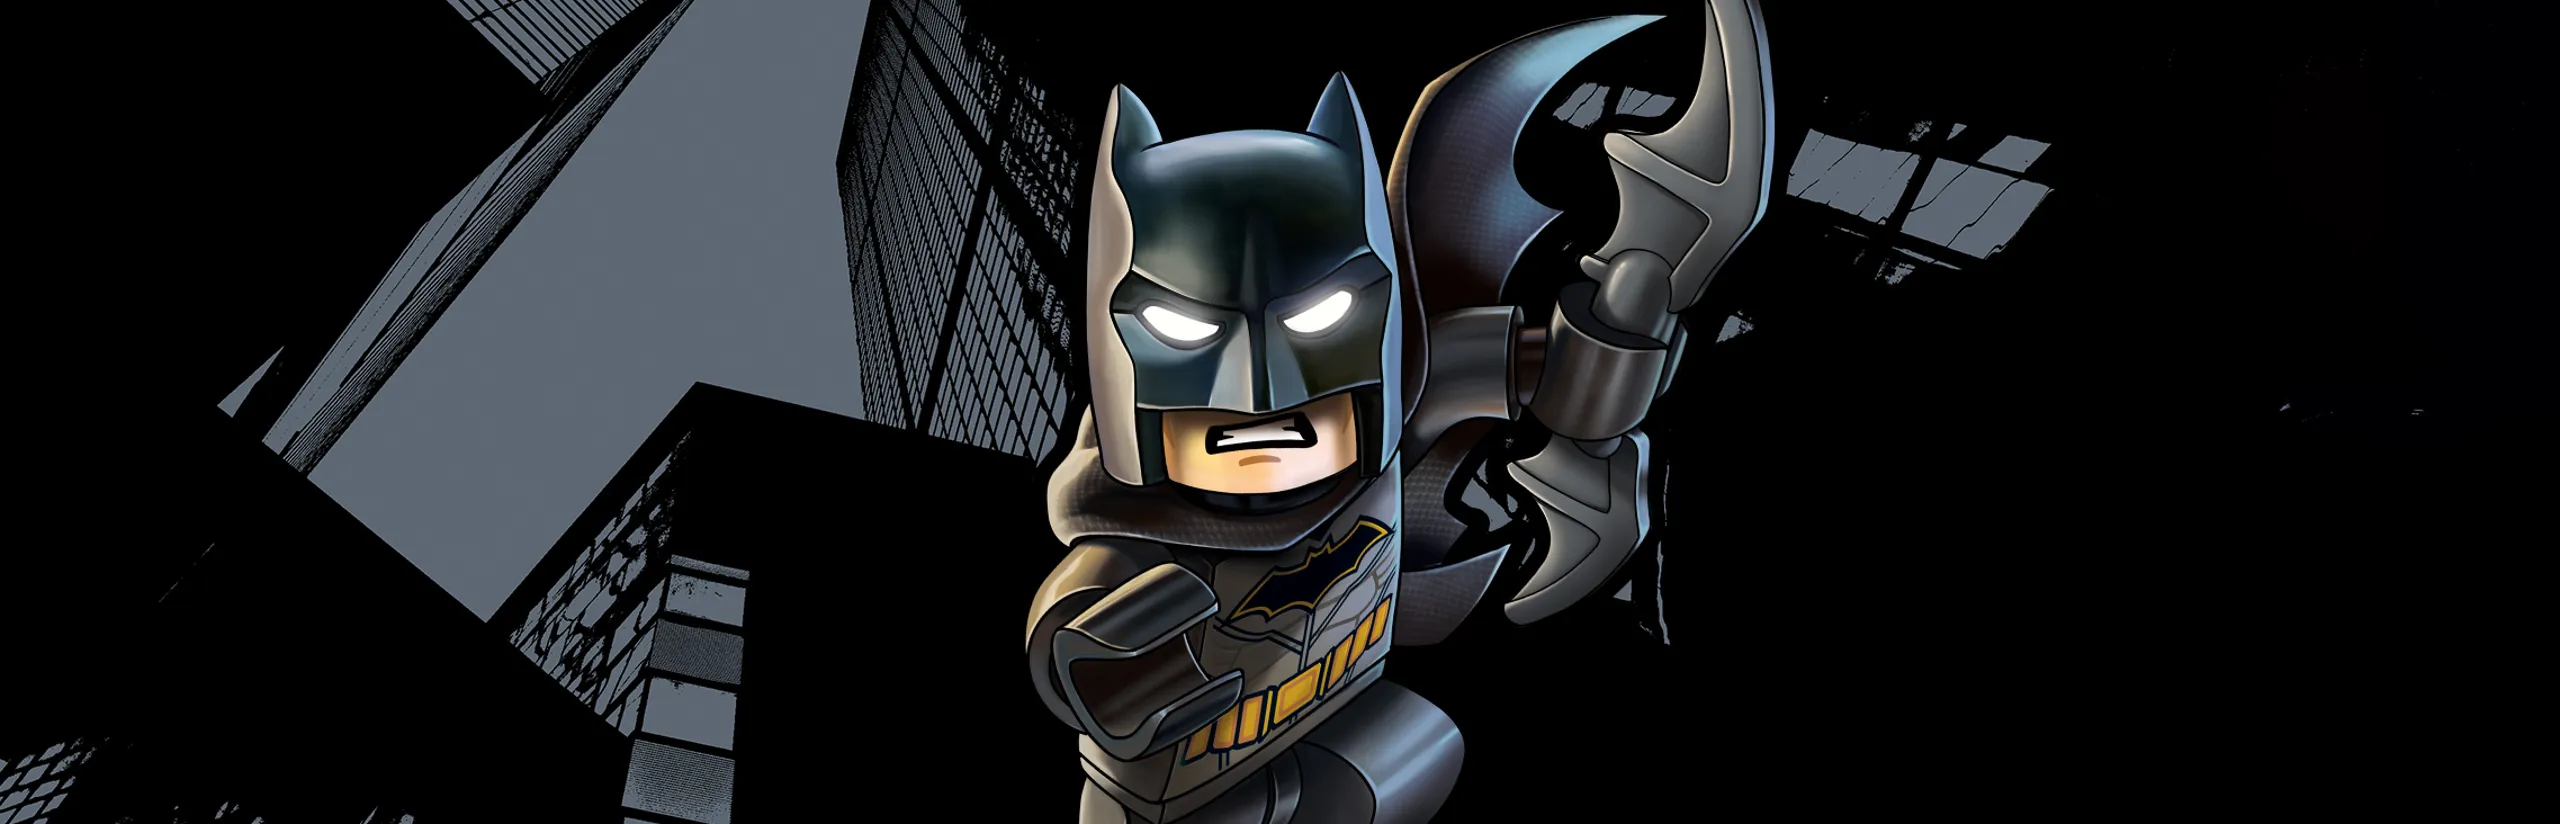 THE LEGO® BATMAN™ MOVIE - LEGO.com for kids